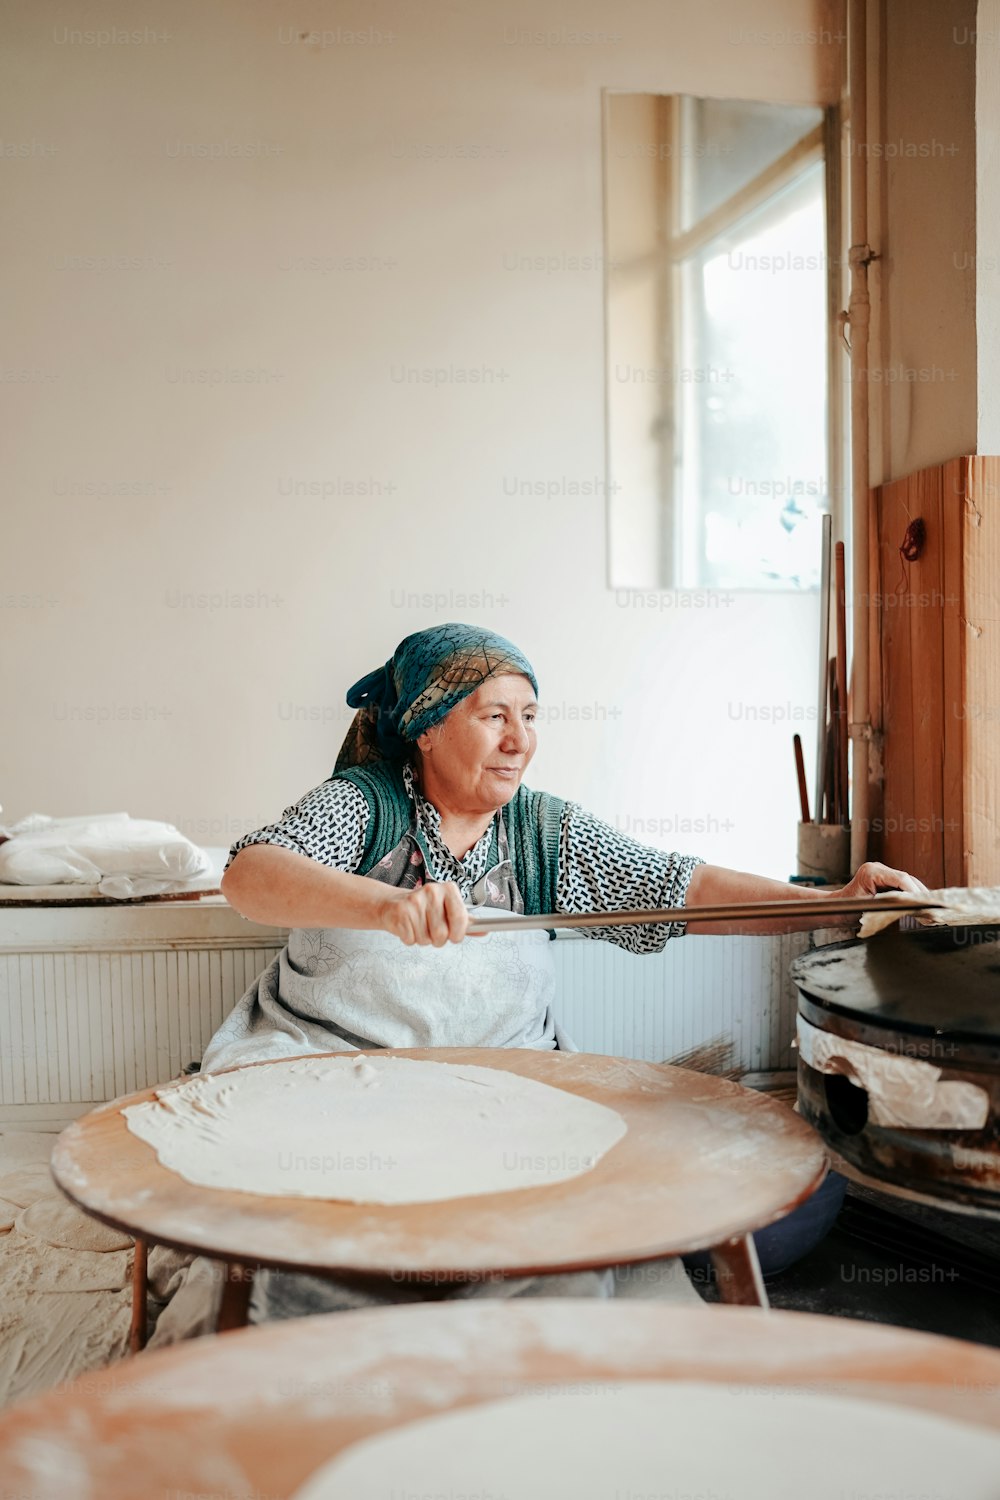 Une femme dans une cuisine en train de préparer une pizza